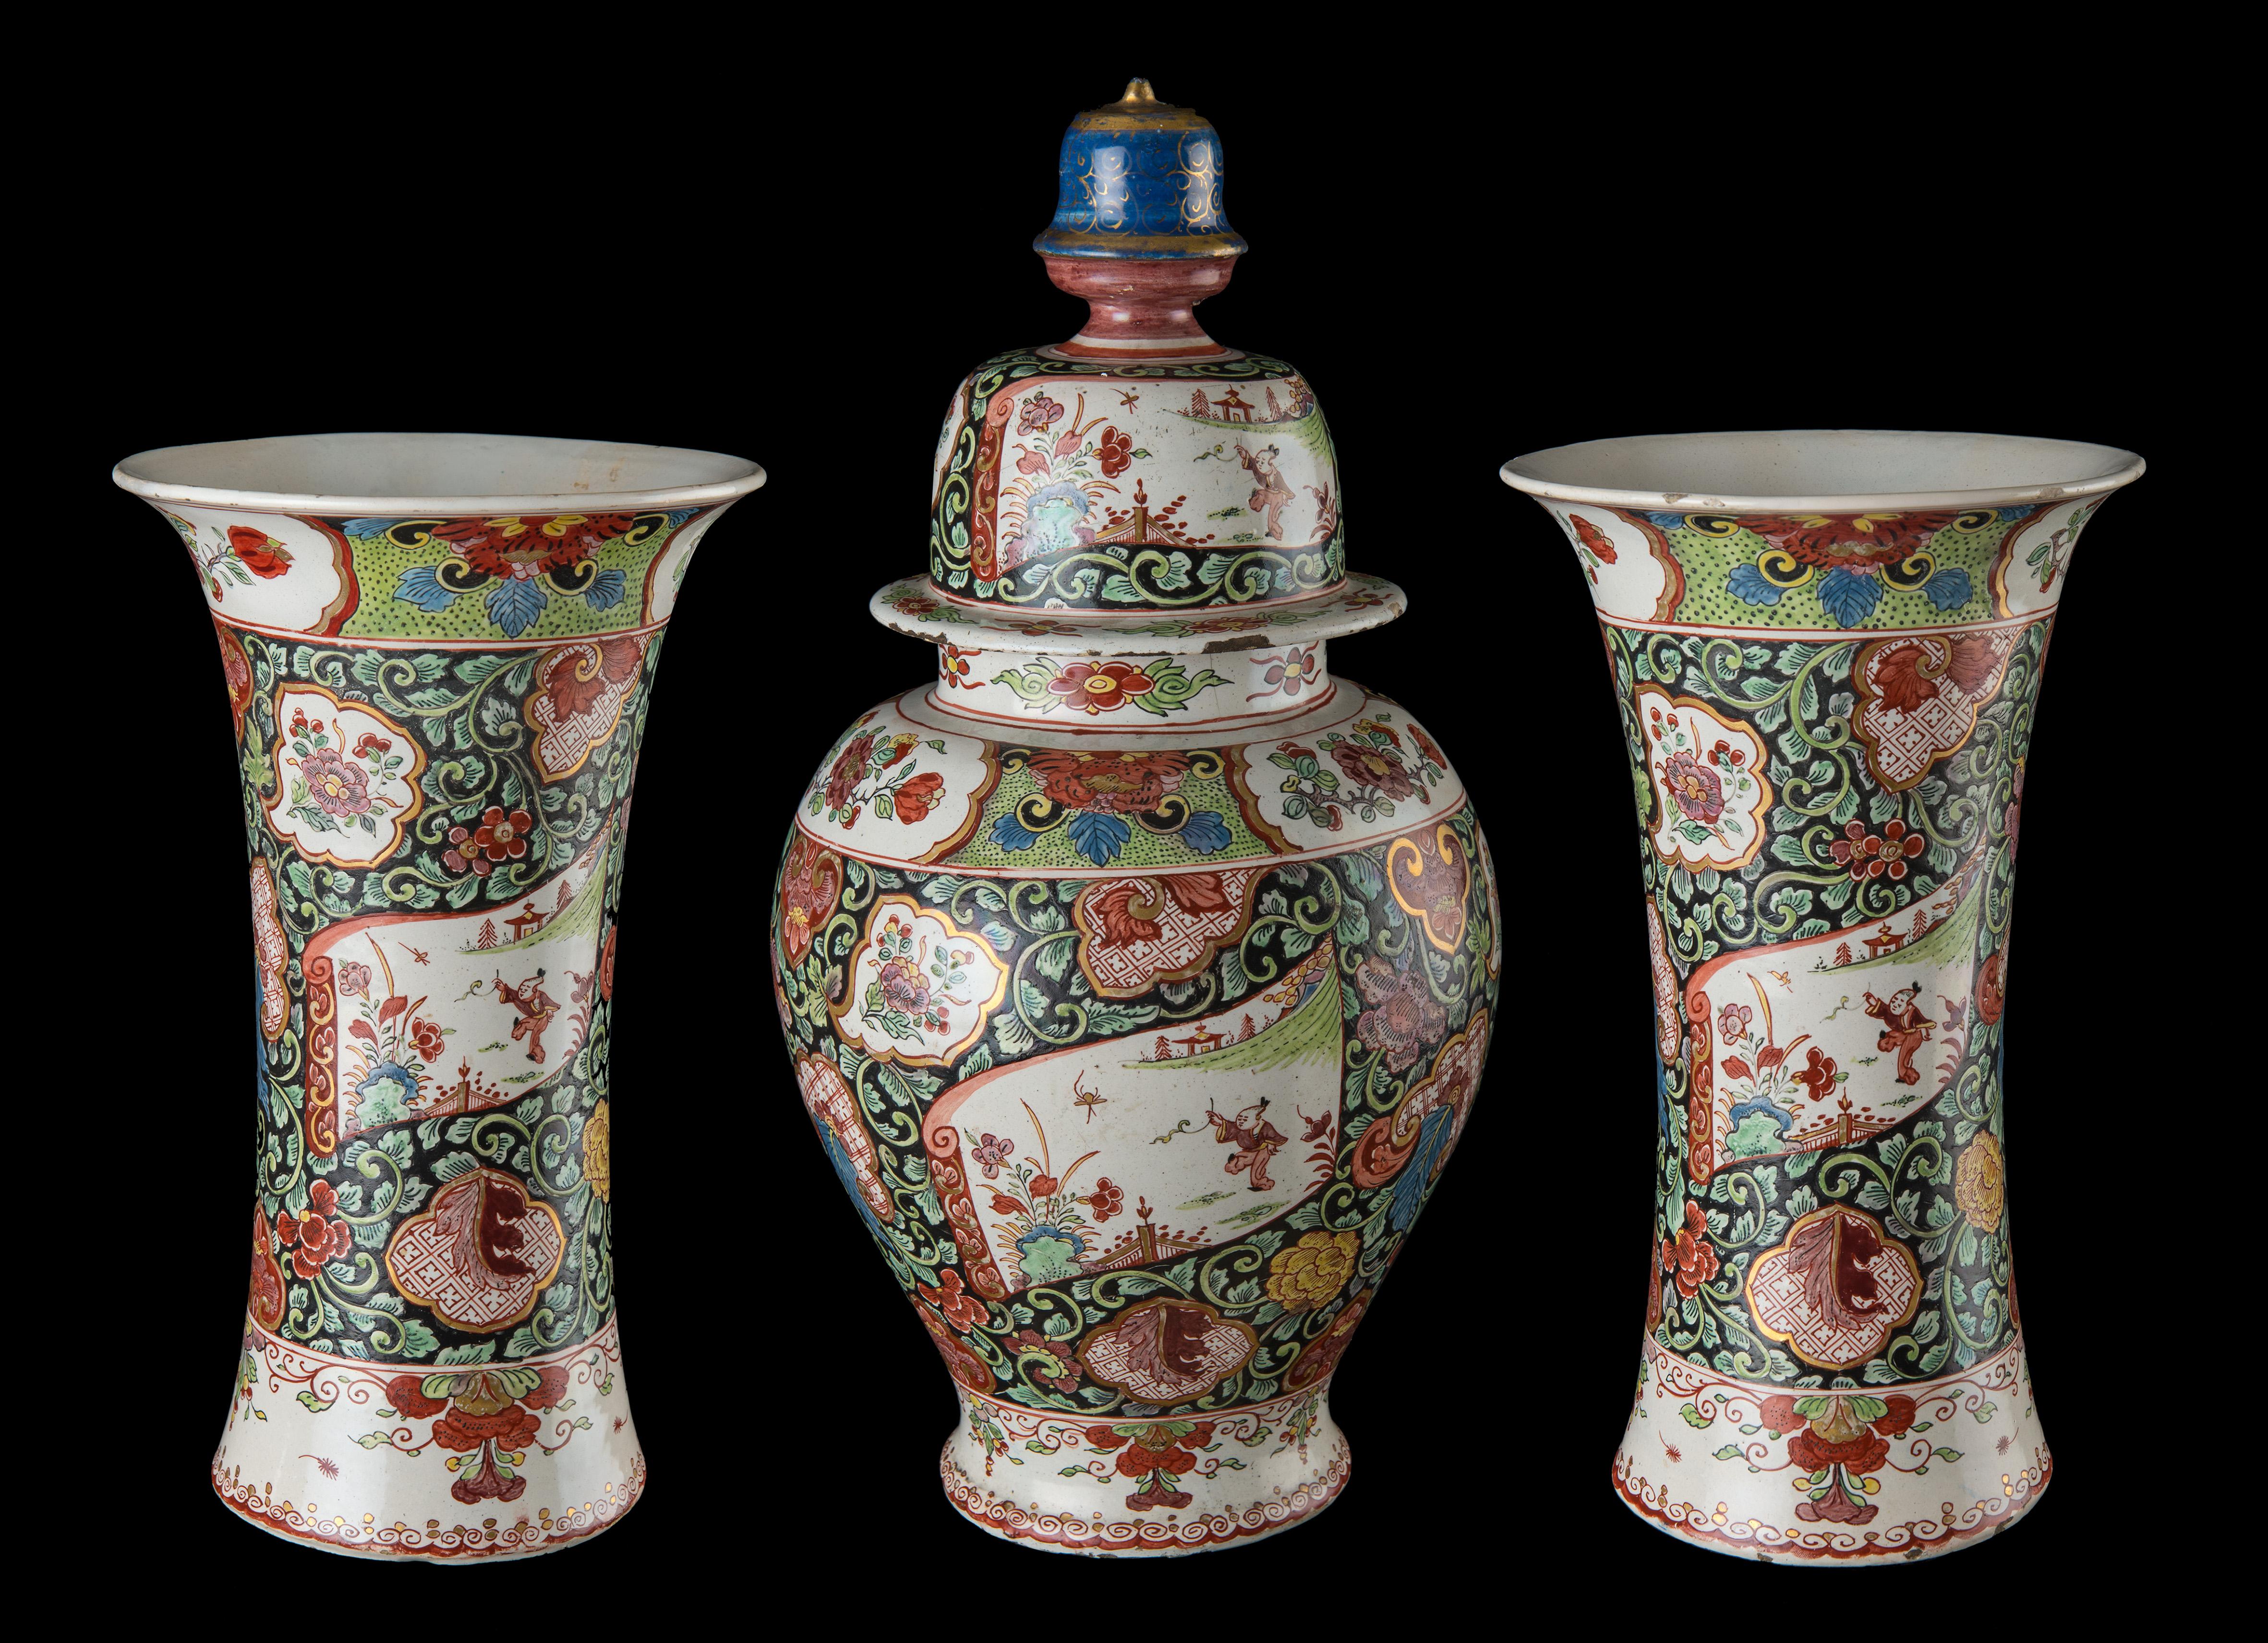 garniture de 3 pièces de chinoiserie Famille rose, Delft, 1730-1740

Cette garniture de petit feu se compose d'un vase balustre avec couvercle et de deux vases à bec. Le couvercle est doté d'un bouton en forme de cloche. Le vase balustre est